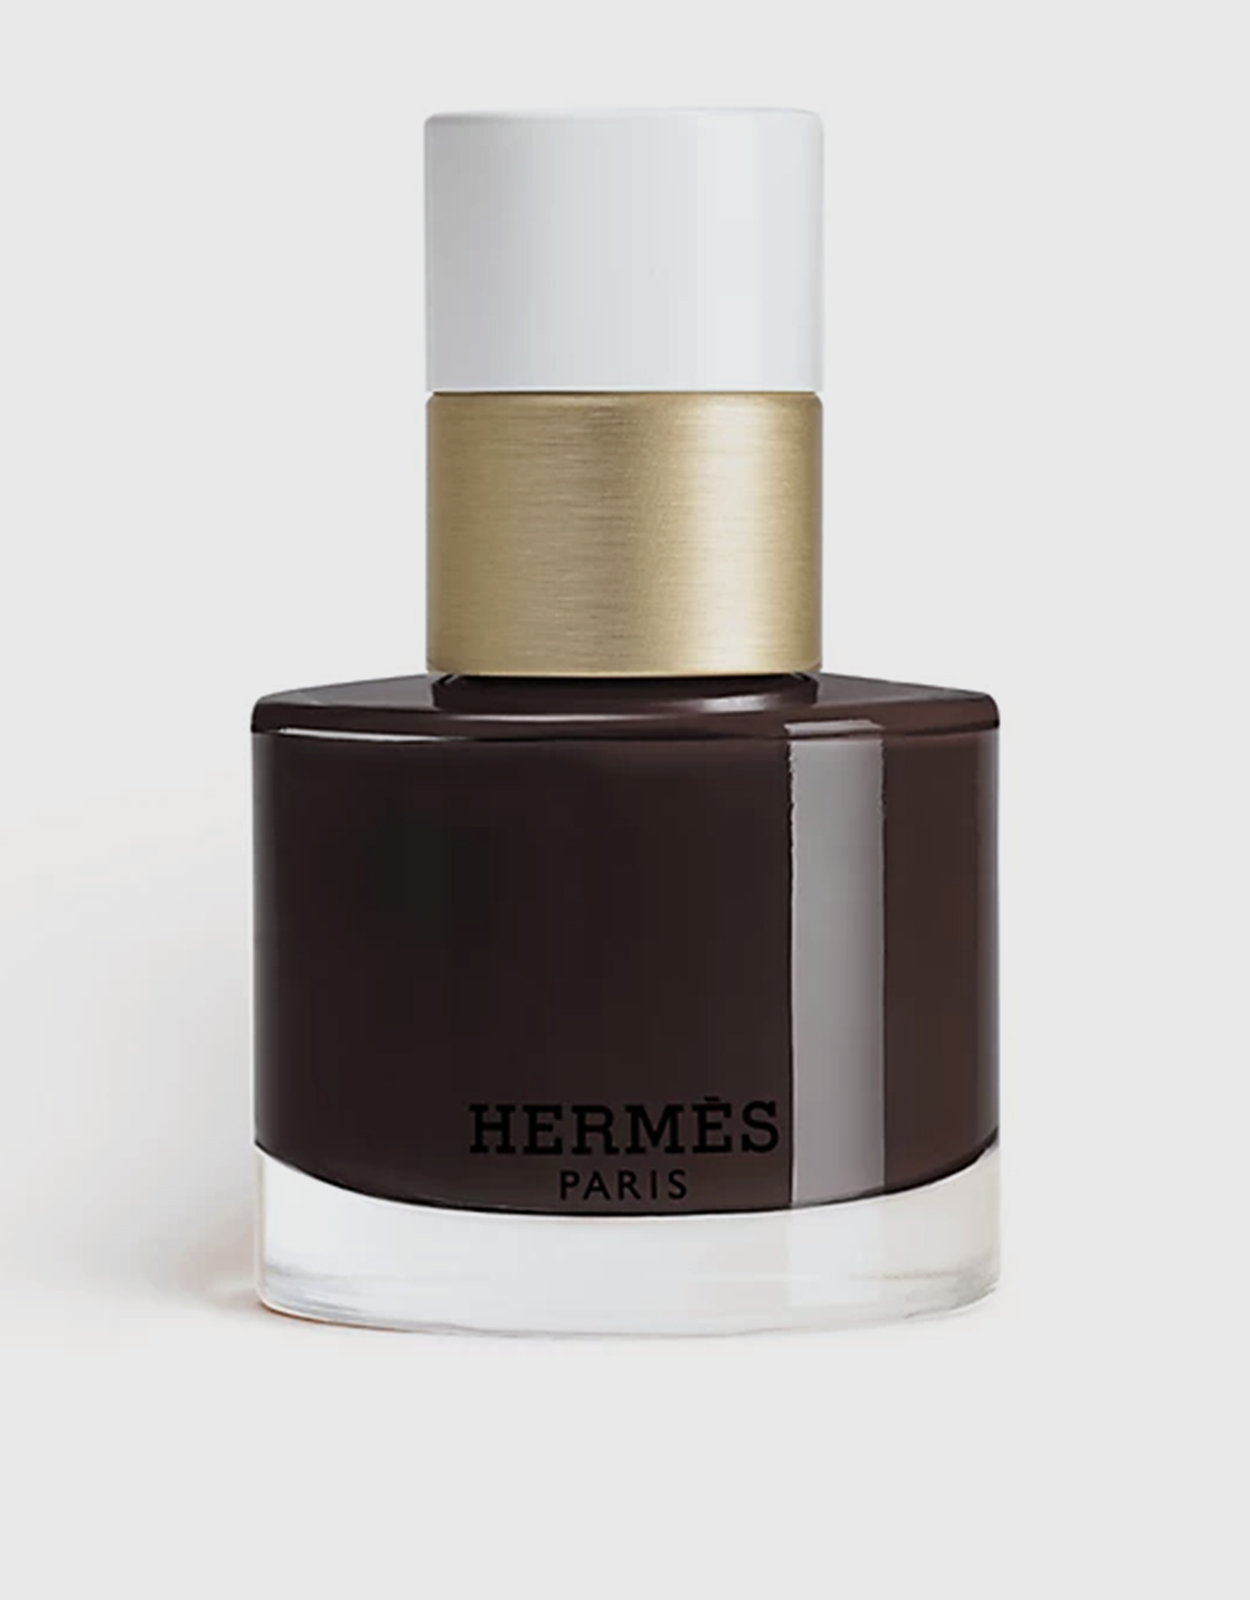 Trait D'Hermes Revitalizing Care Mascara, 95 Brun Bistre